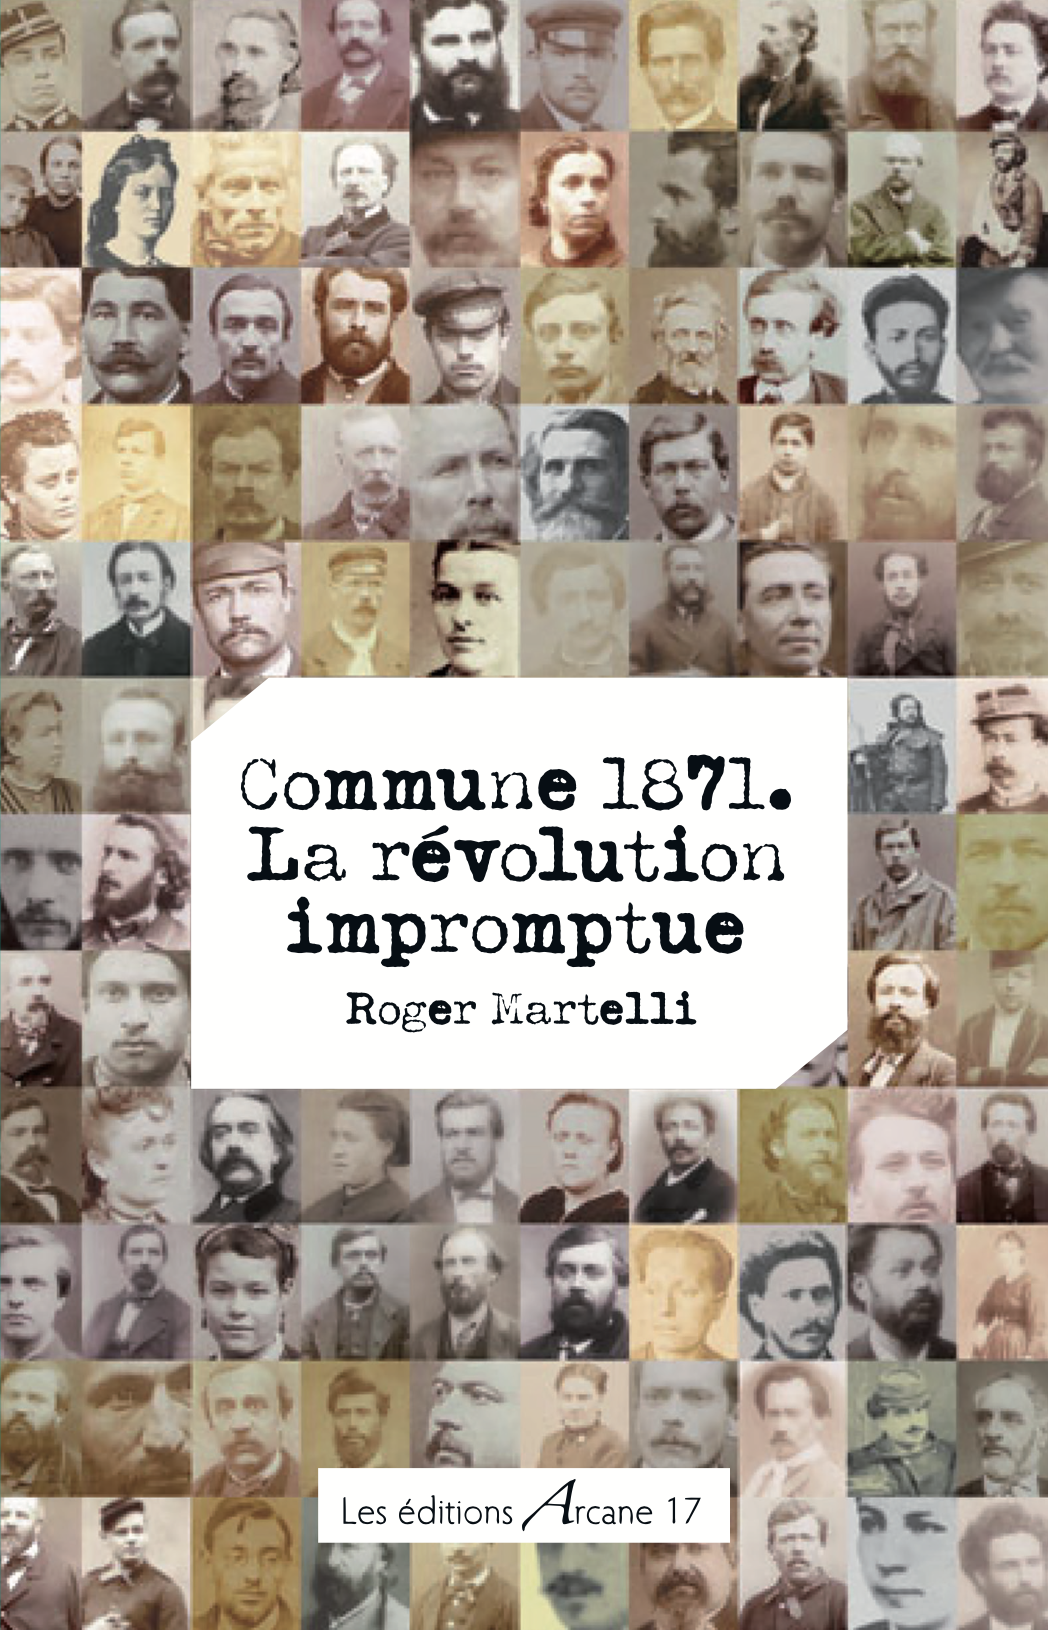 Commune 1871. La révolution impromptue, de Roger Martelli